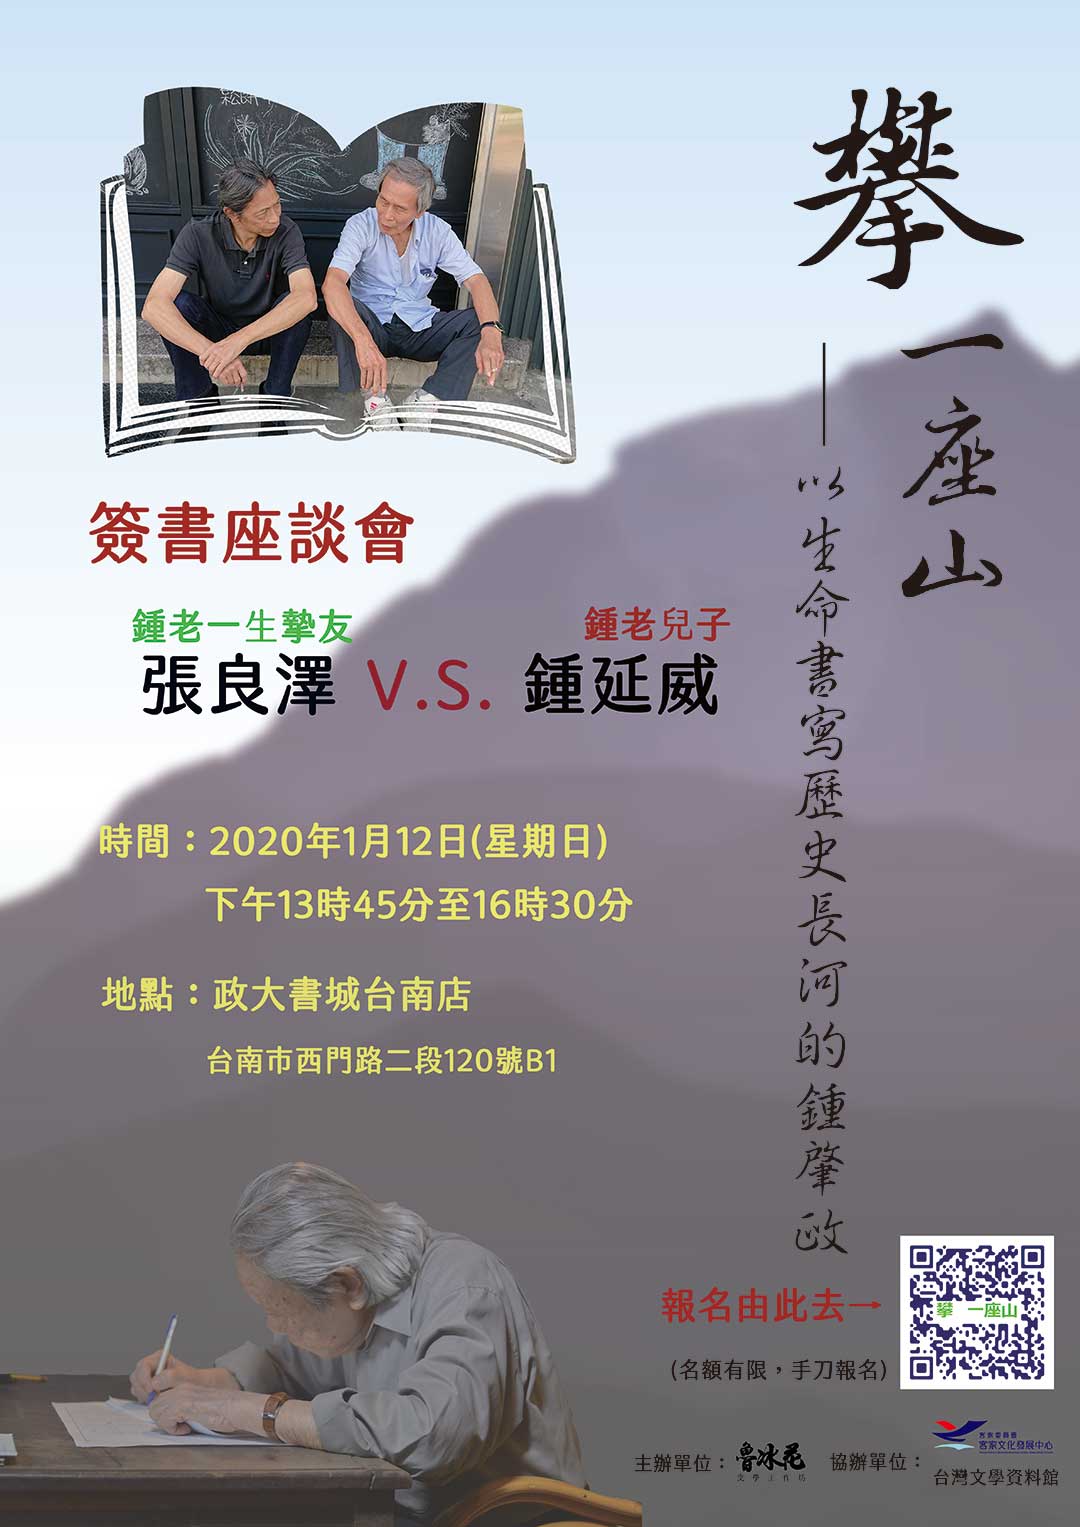 《攀 一座山》簽書座談會(台南場)活動宣傳海報